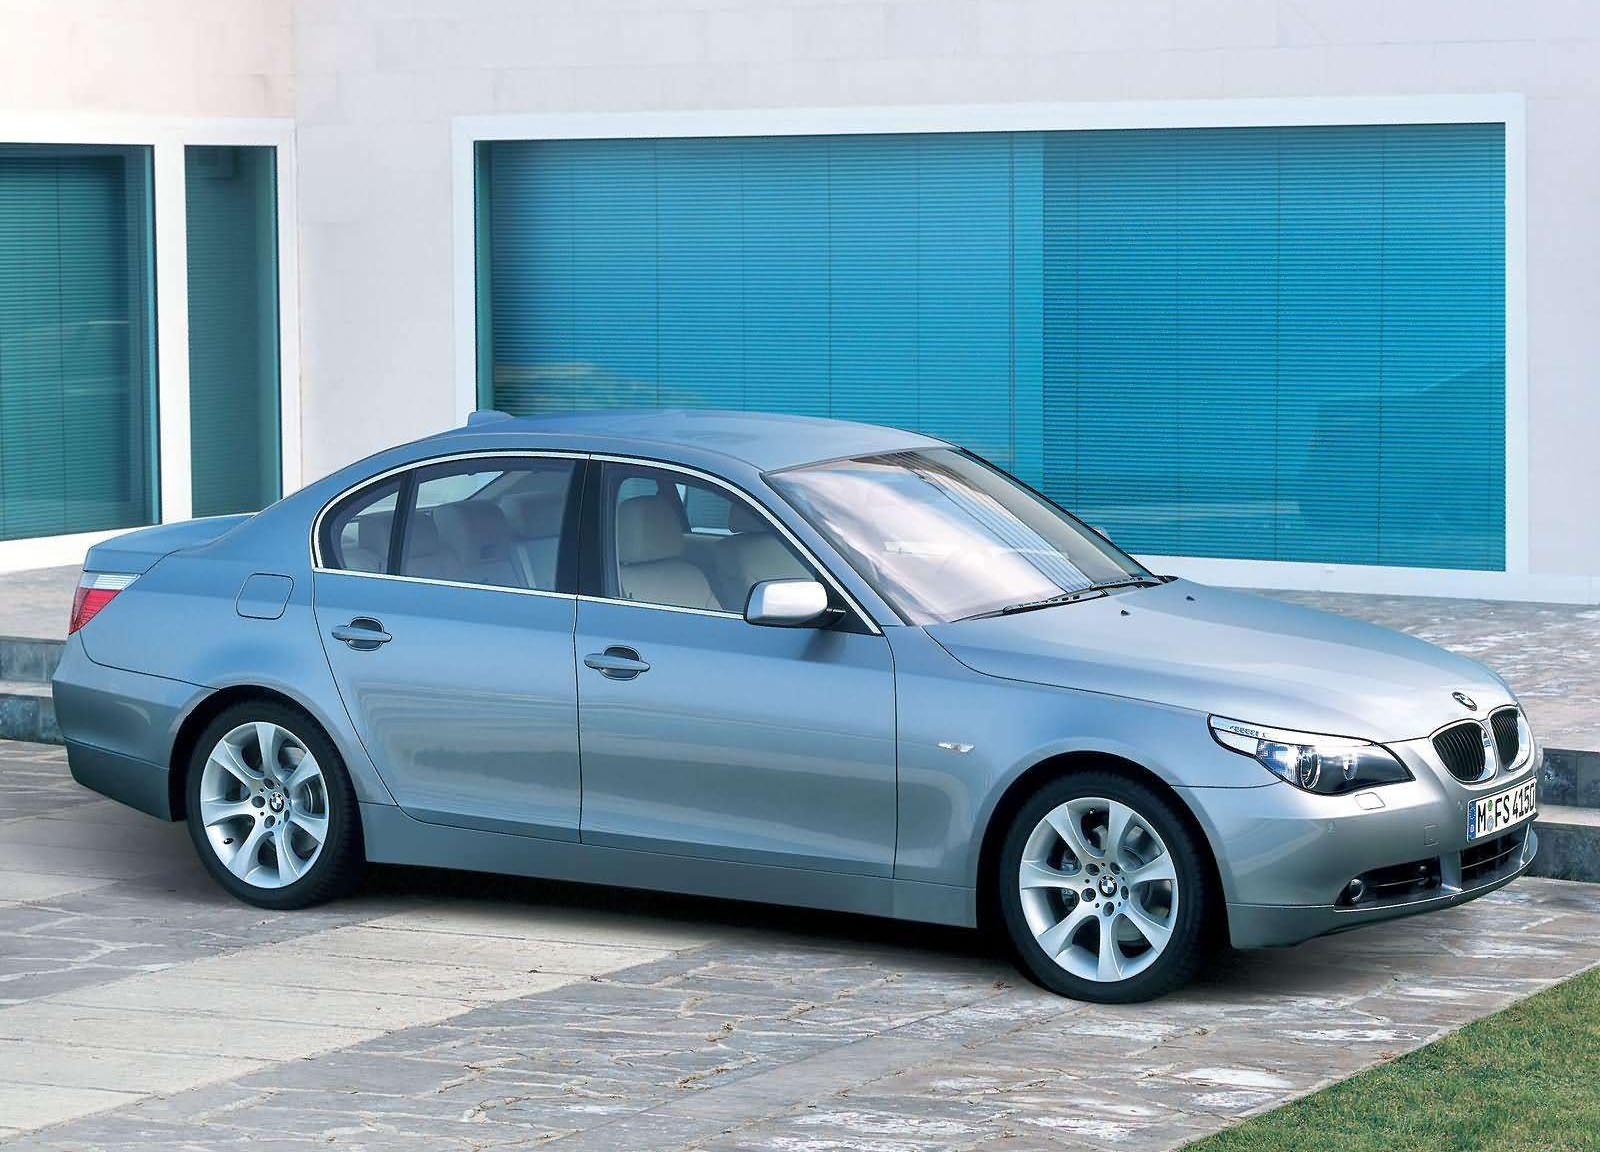 BMW Seria 5 E 60, produsa din 2004, a fost 4 ani la rand cea mai vanduta din segmentul ei